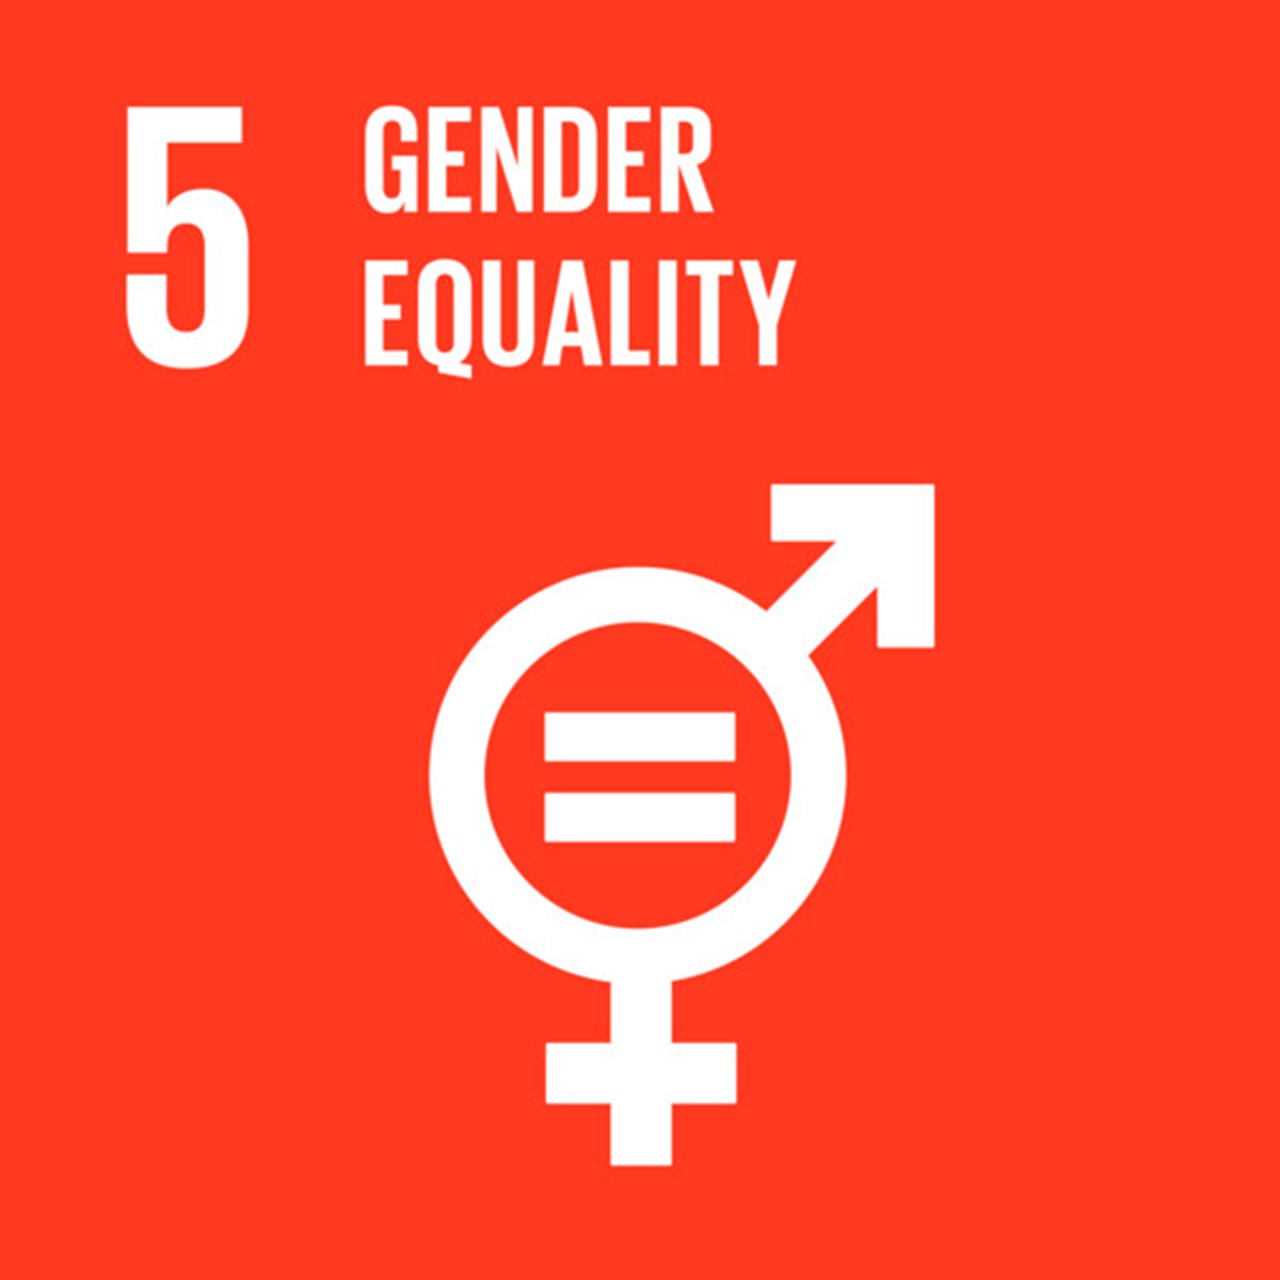 The Global Goals, Goal 5 - Gender Equality